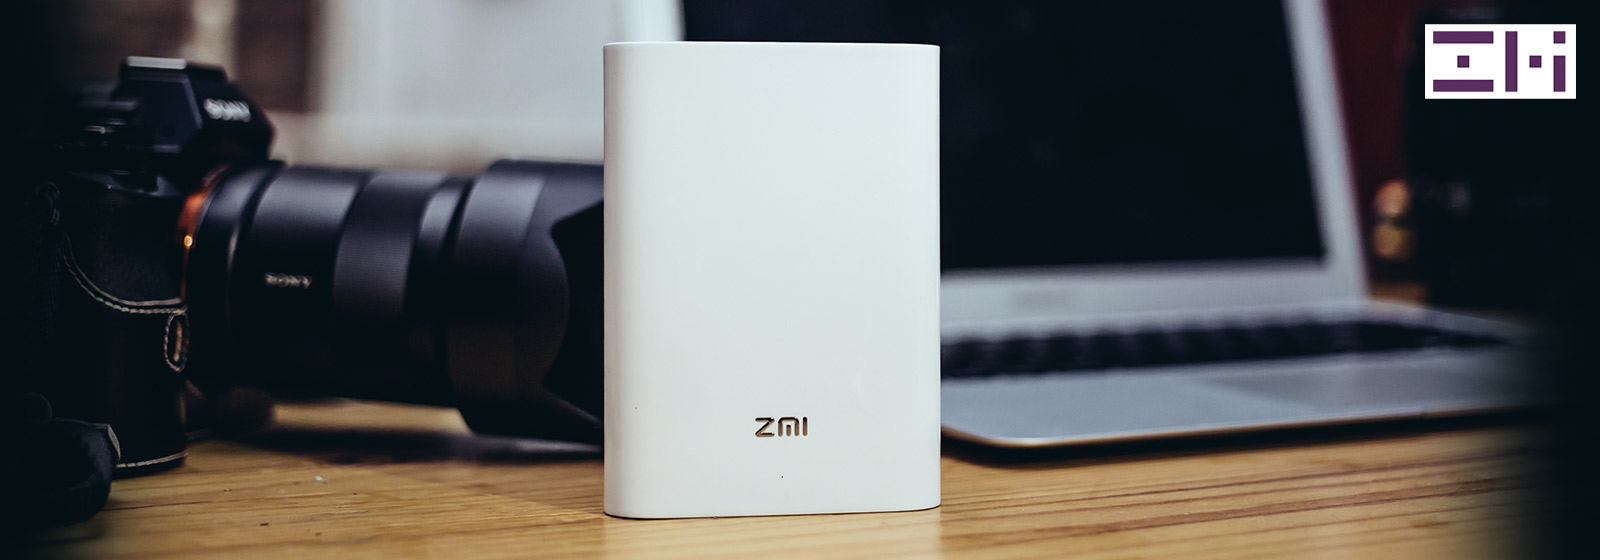 ZMI MF855バッテリーWIFI